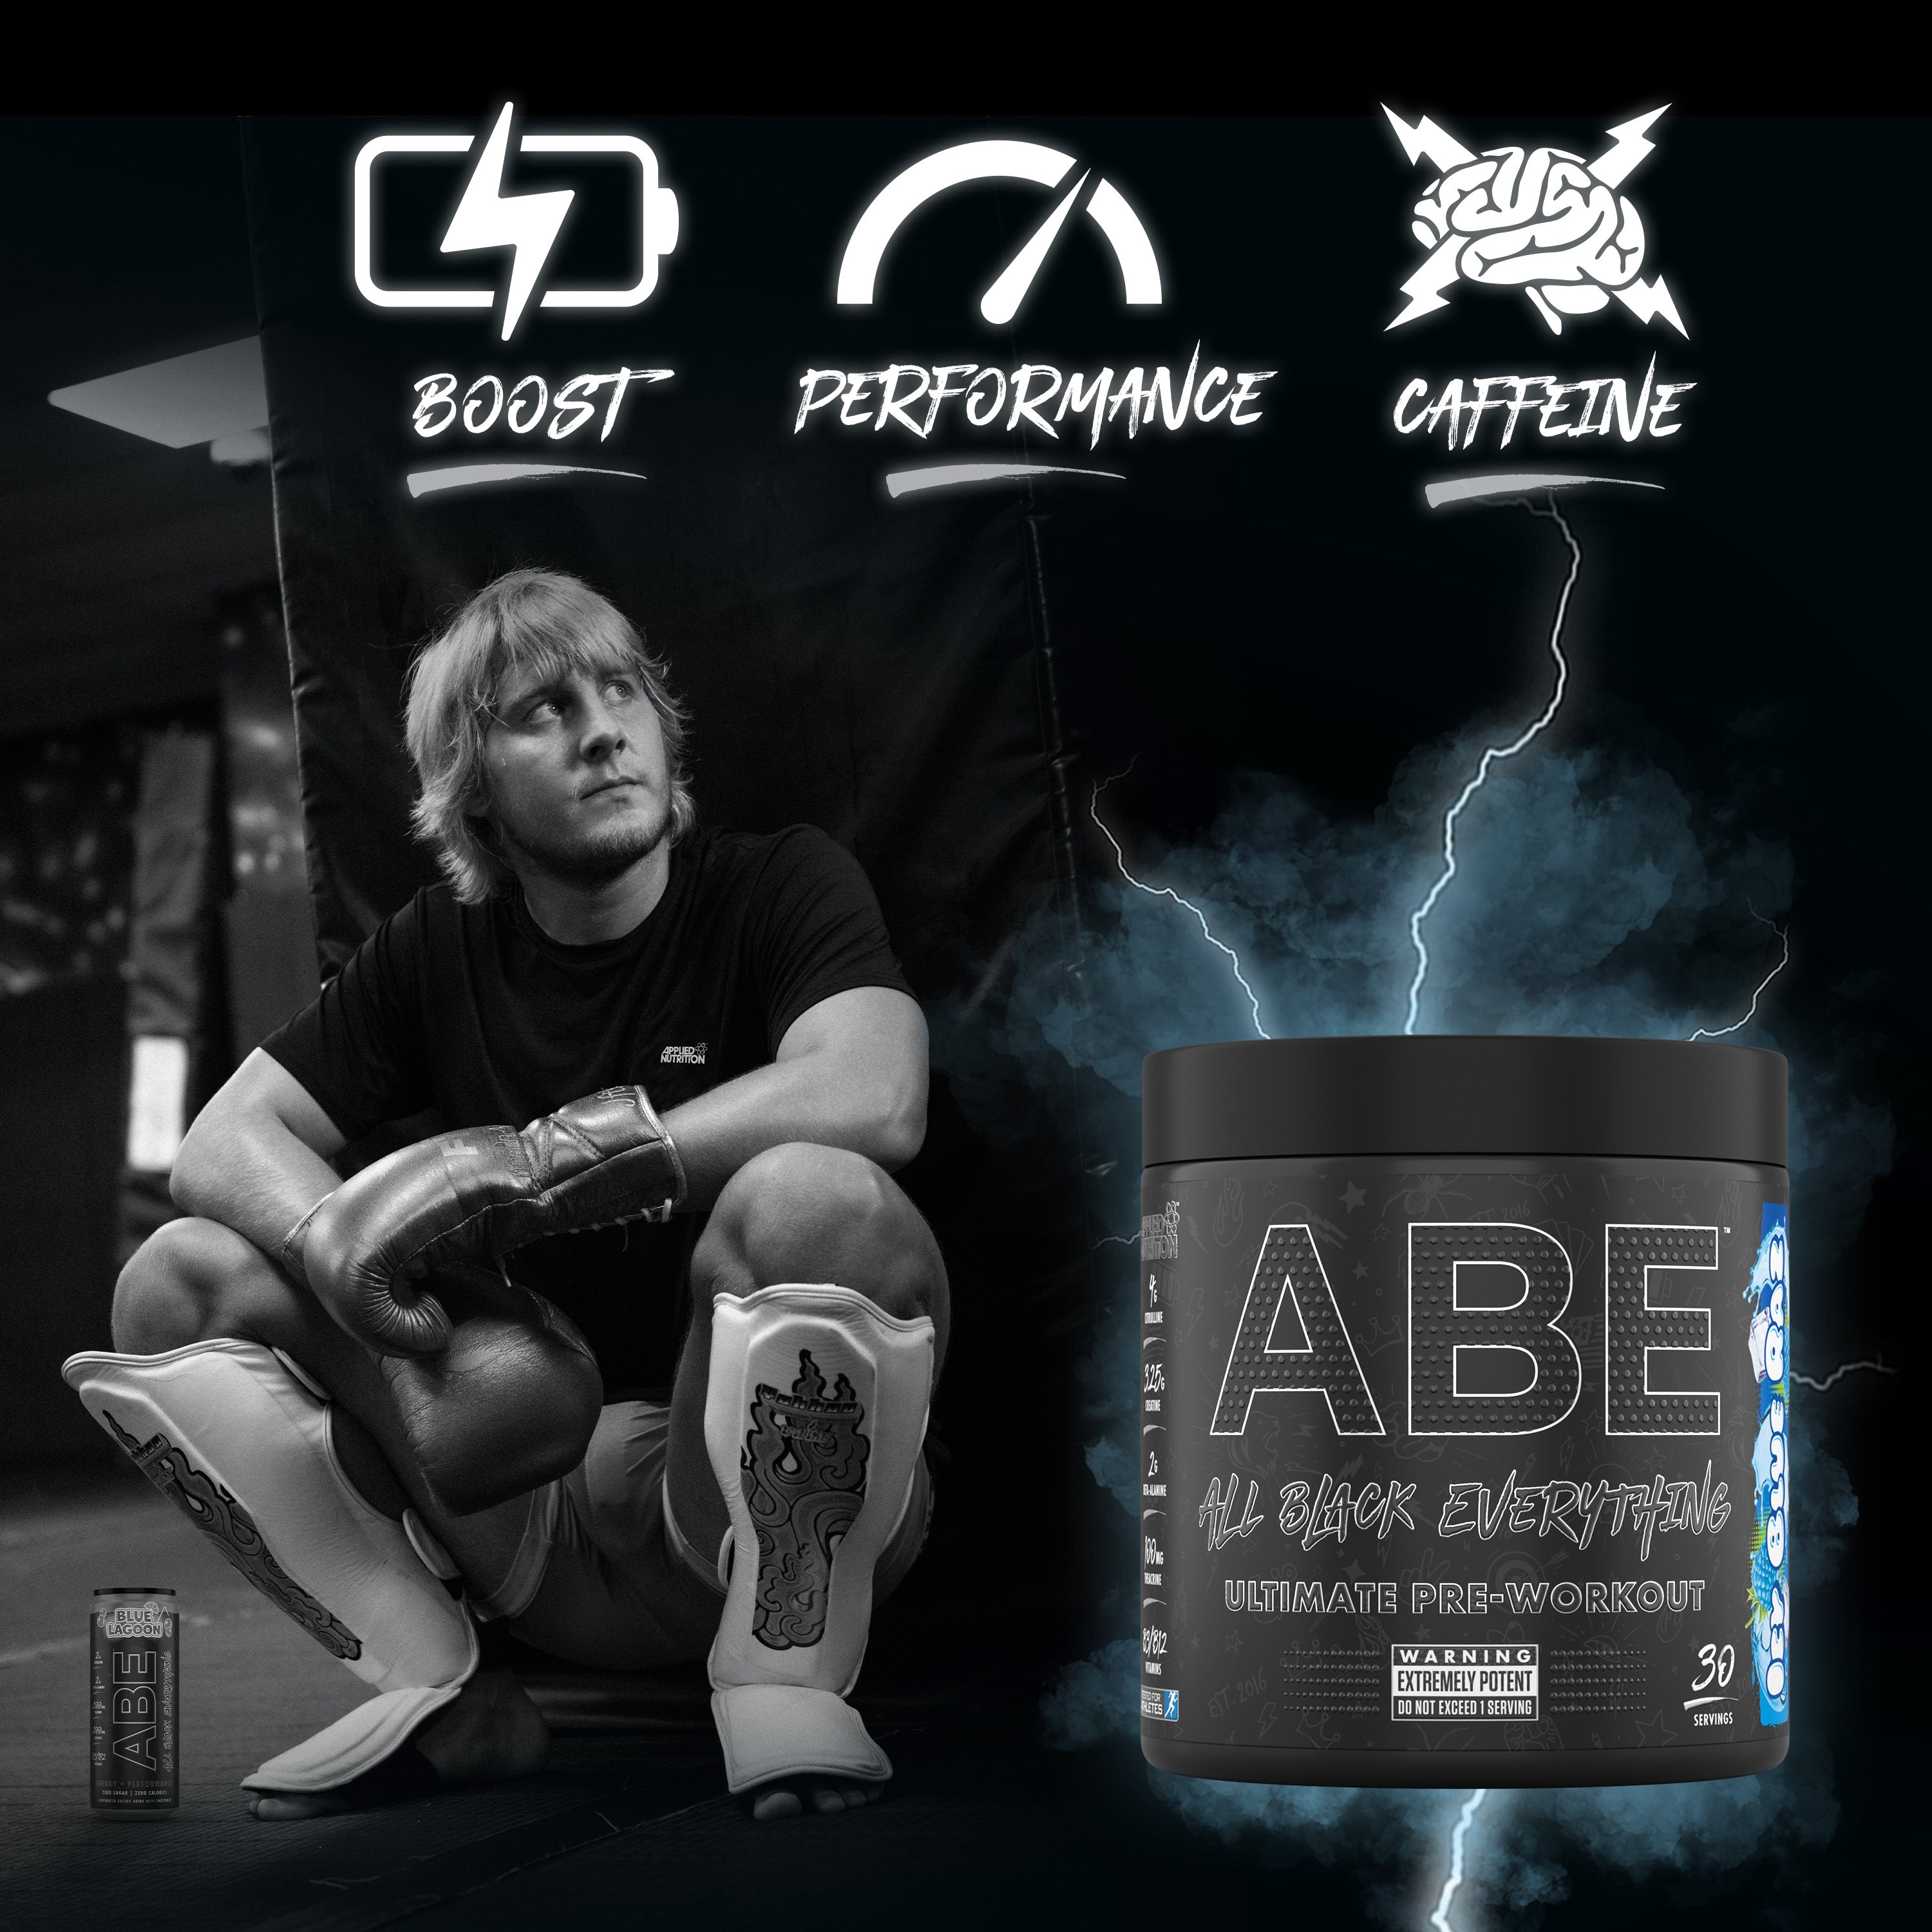 une image contenant l'athlète de UFC Paddy Pimblett, un pot de pré-workout ABE parfum Icy Blue Raz avec un éclair à l'arrière, ainsi que des symboles qui imagent le boost, la performance et la caféine respectivement.